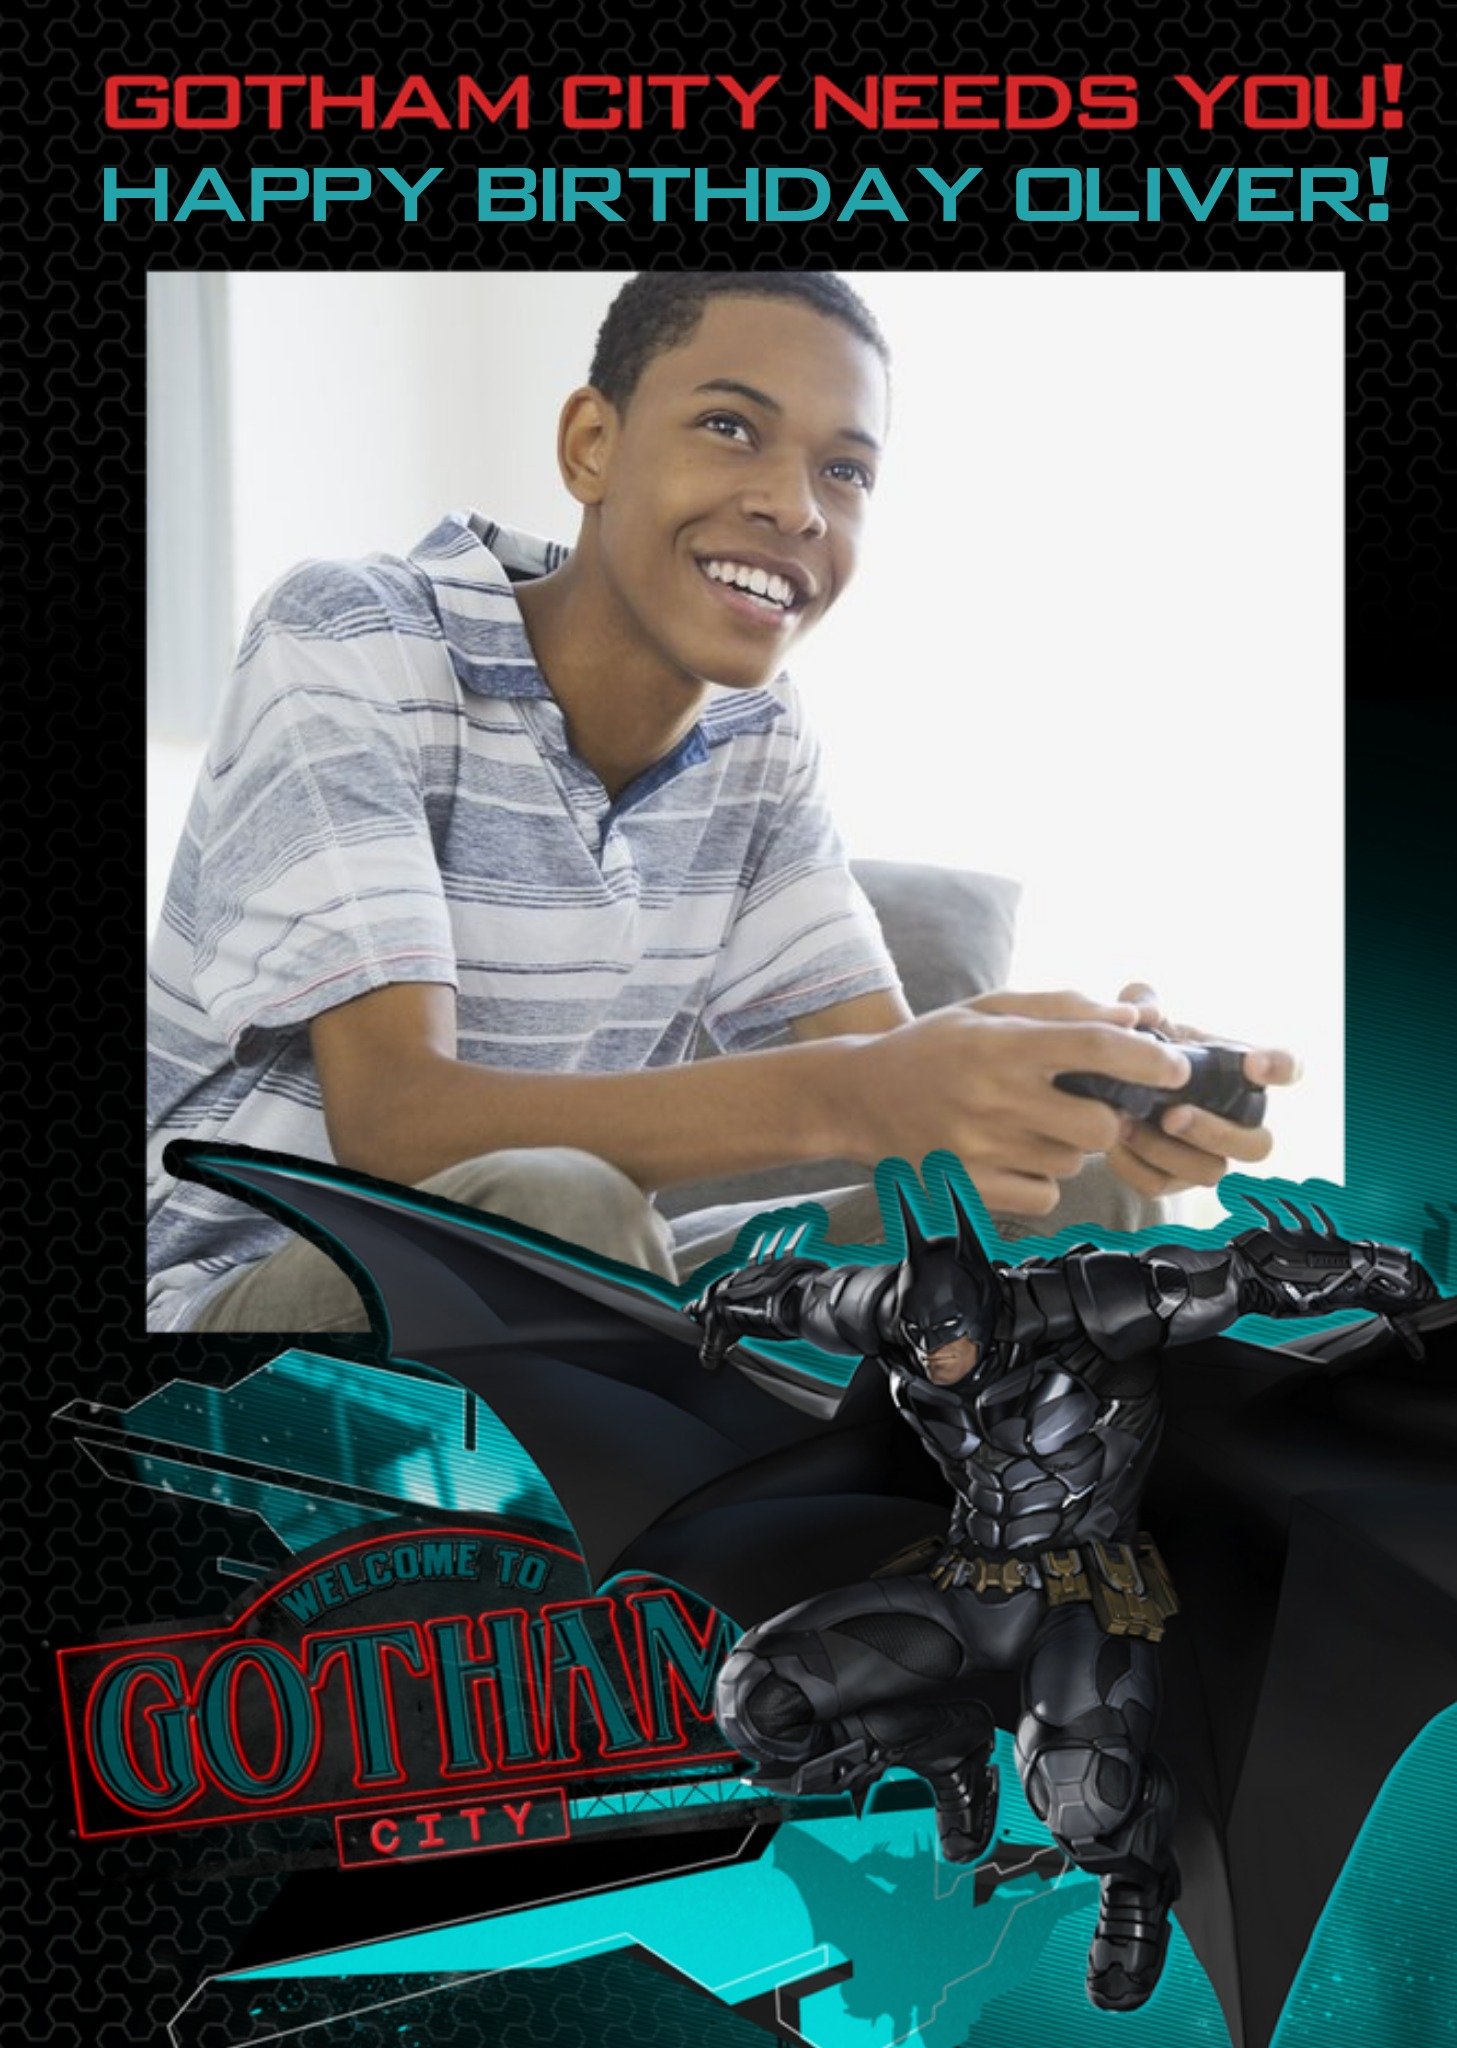 Dc Batman Arkham Knight Gotham City Needs You Photo Upload Birthday Card, Large